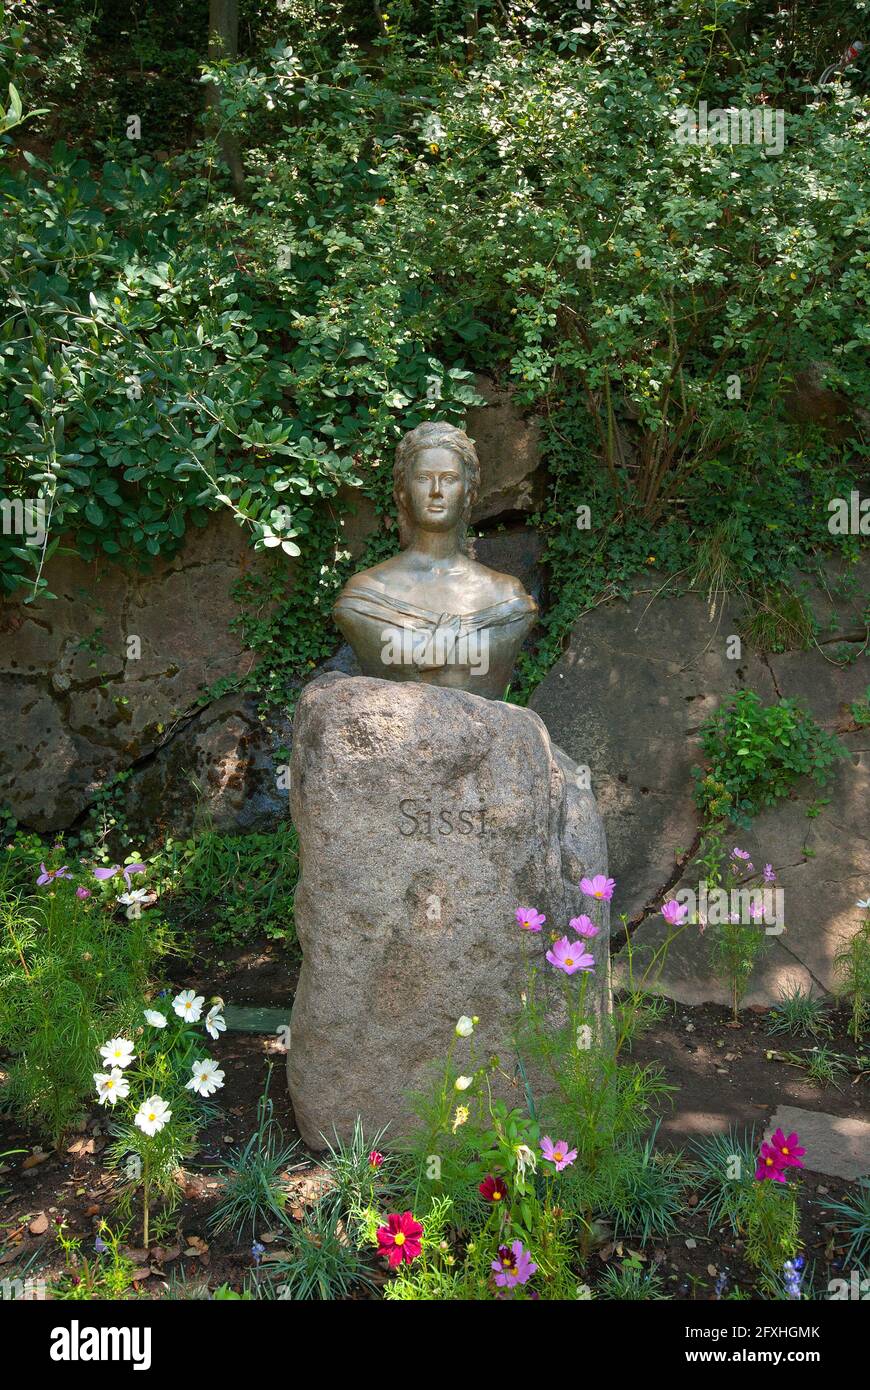 Statua di Elisabetta di Baviera imperatrice d'Austria (chiamata Sissi), Giardini del Castello di Trauttmansdorff, Merano, Trentino-Alto Adige, Italia Foto Stock